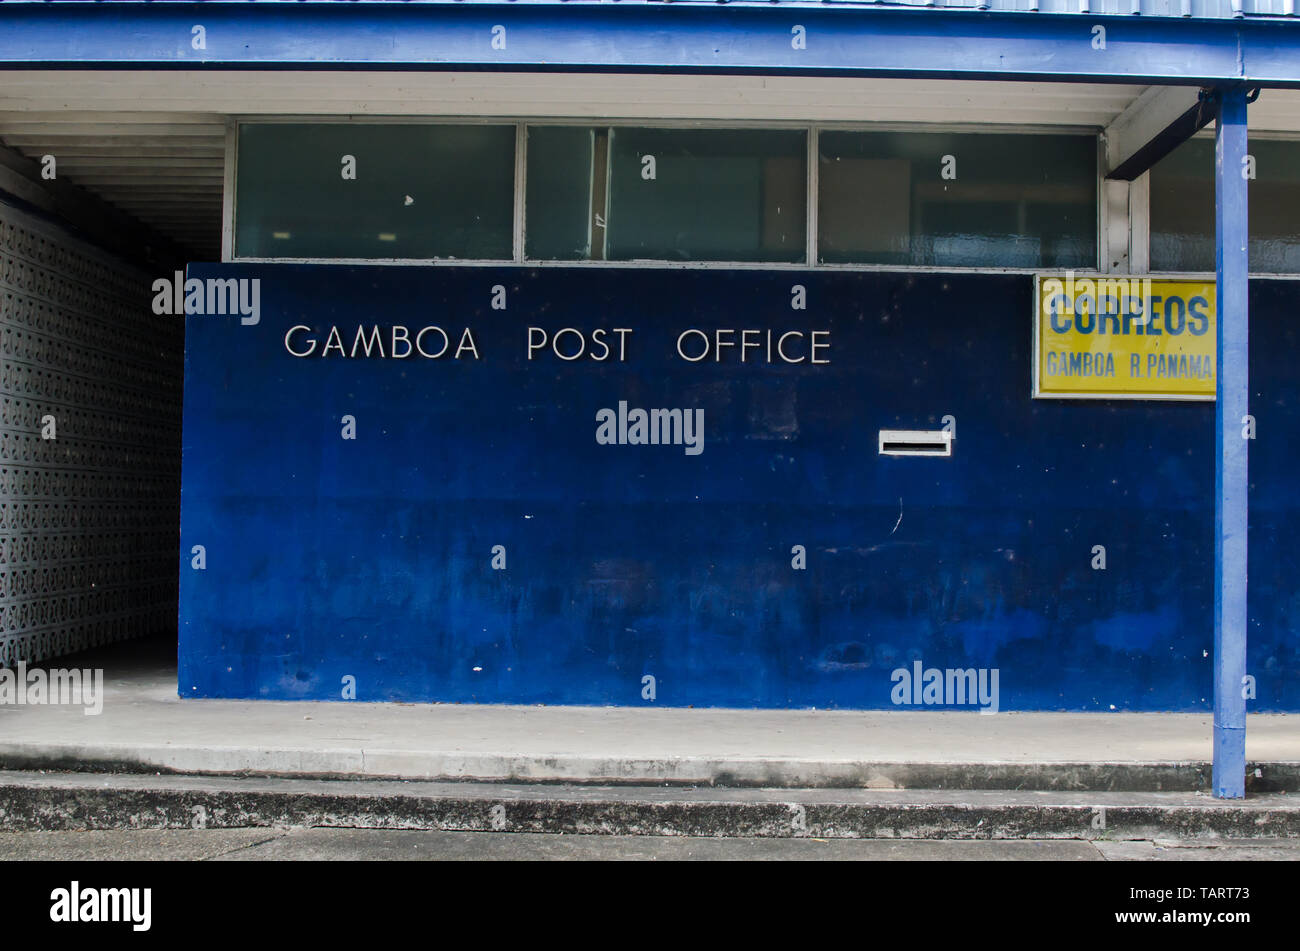 Détails de l'ancien , maintenant fermé, bâtiment du bureau de poste, situé dans la petite ville de Gamboa situé à proximité de la Canal de Panama Banque D'Images